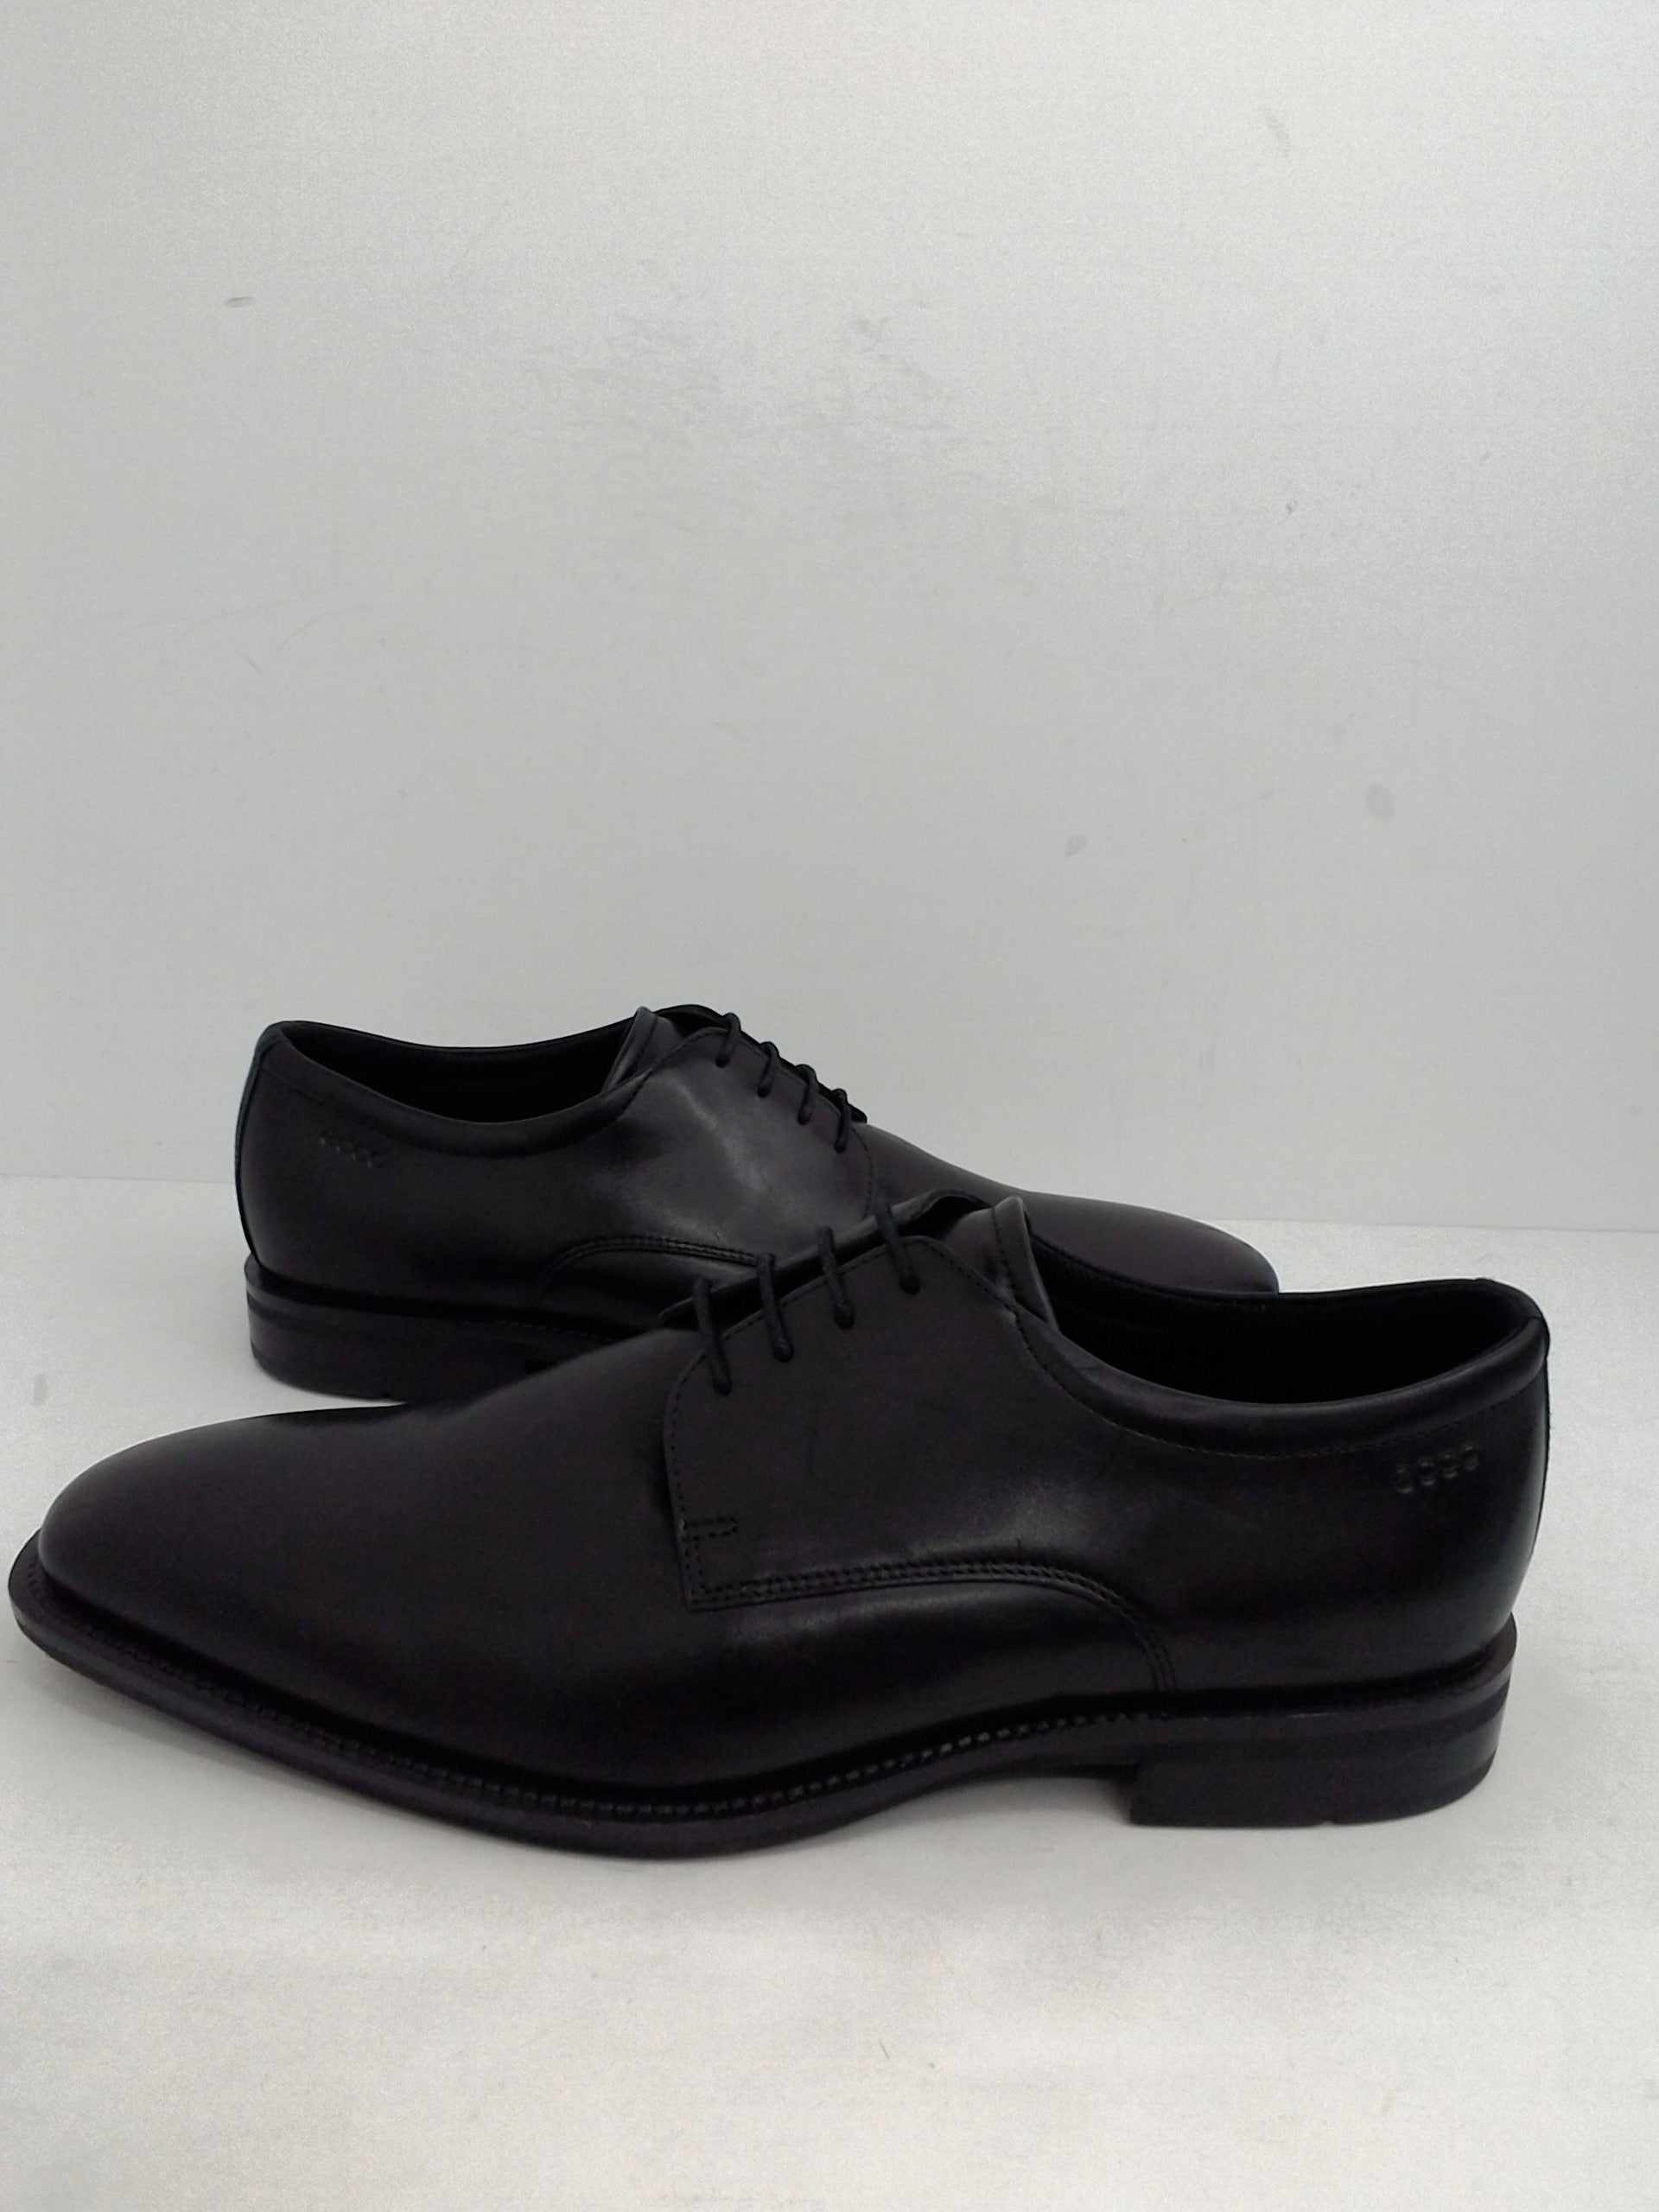 Ecco Men's Oxfords, Dress Shoes, Black, Leather, Size 10 M - Prime ...